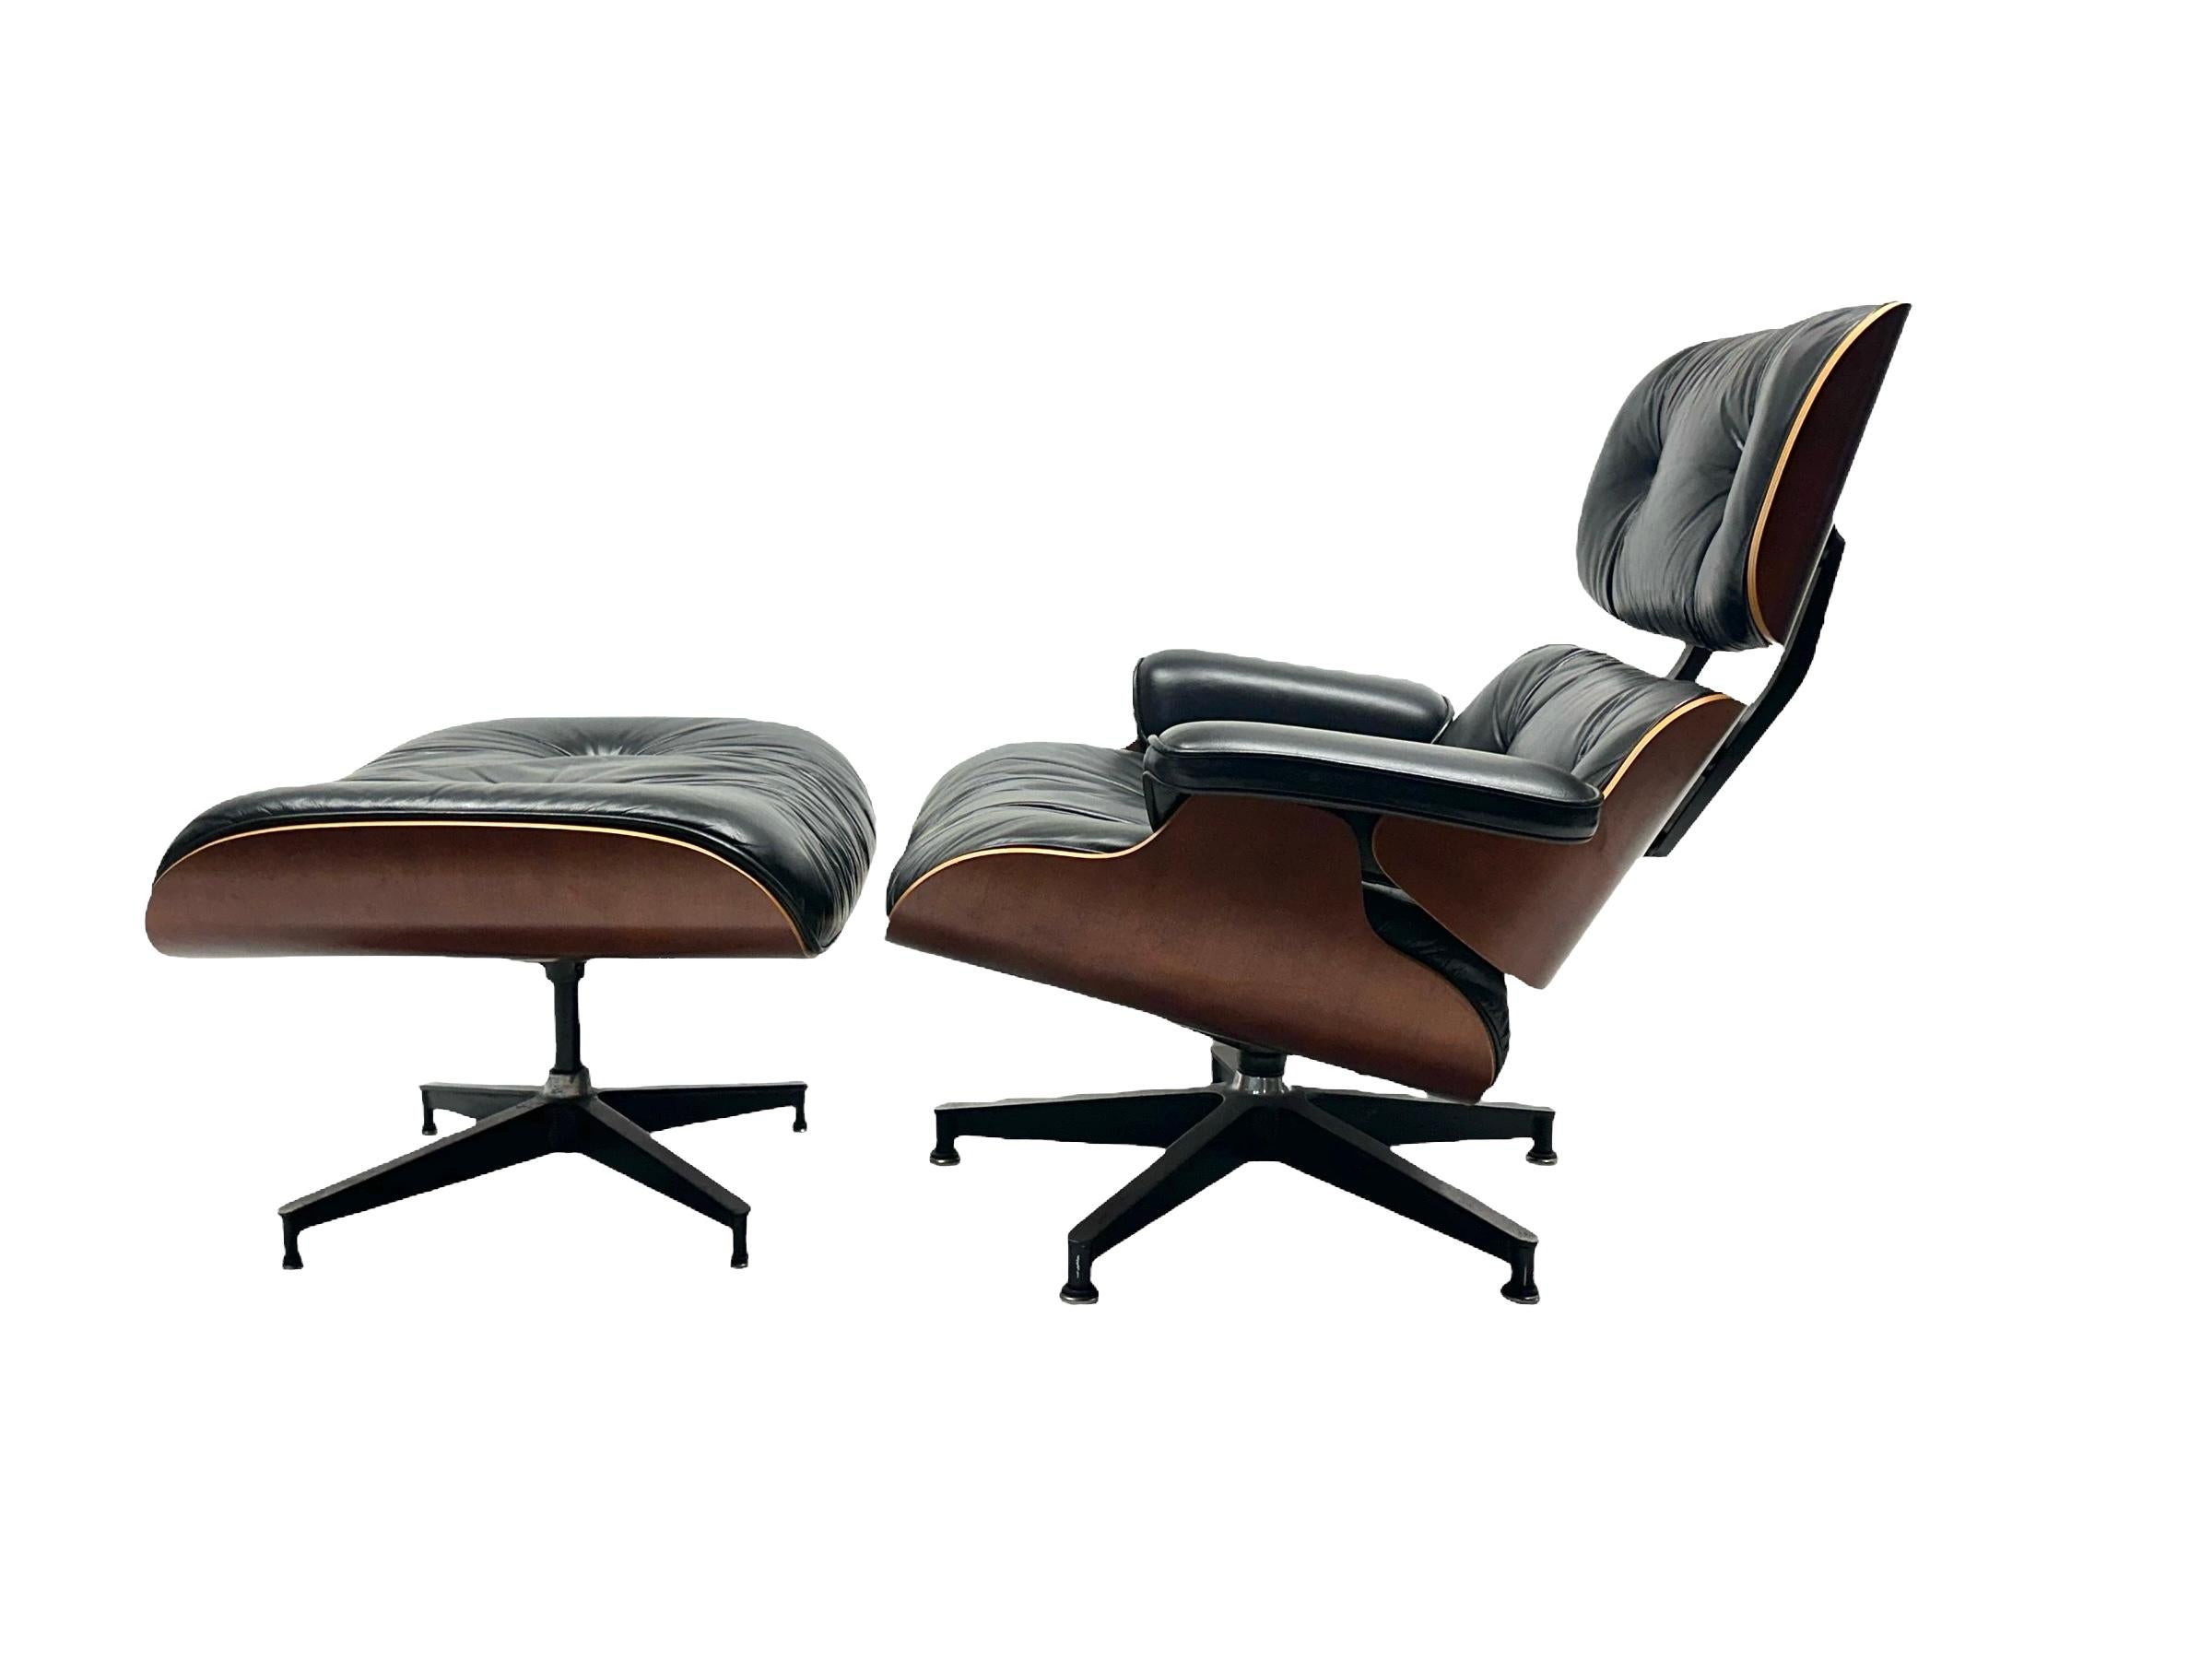 Klassischer Eames Lounge Chair und Ottomane von Herman Miller. CIRCA 1990er Produktion in eleganter Kirschbaumausführung. Warme Holztöne und gleichmäßige Verarbeitung. Sie wurde nur für kurze Zeit produziert und ist nur noch schwer zu finden. Sehr